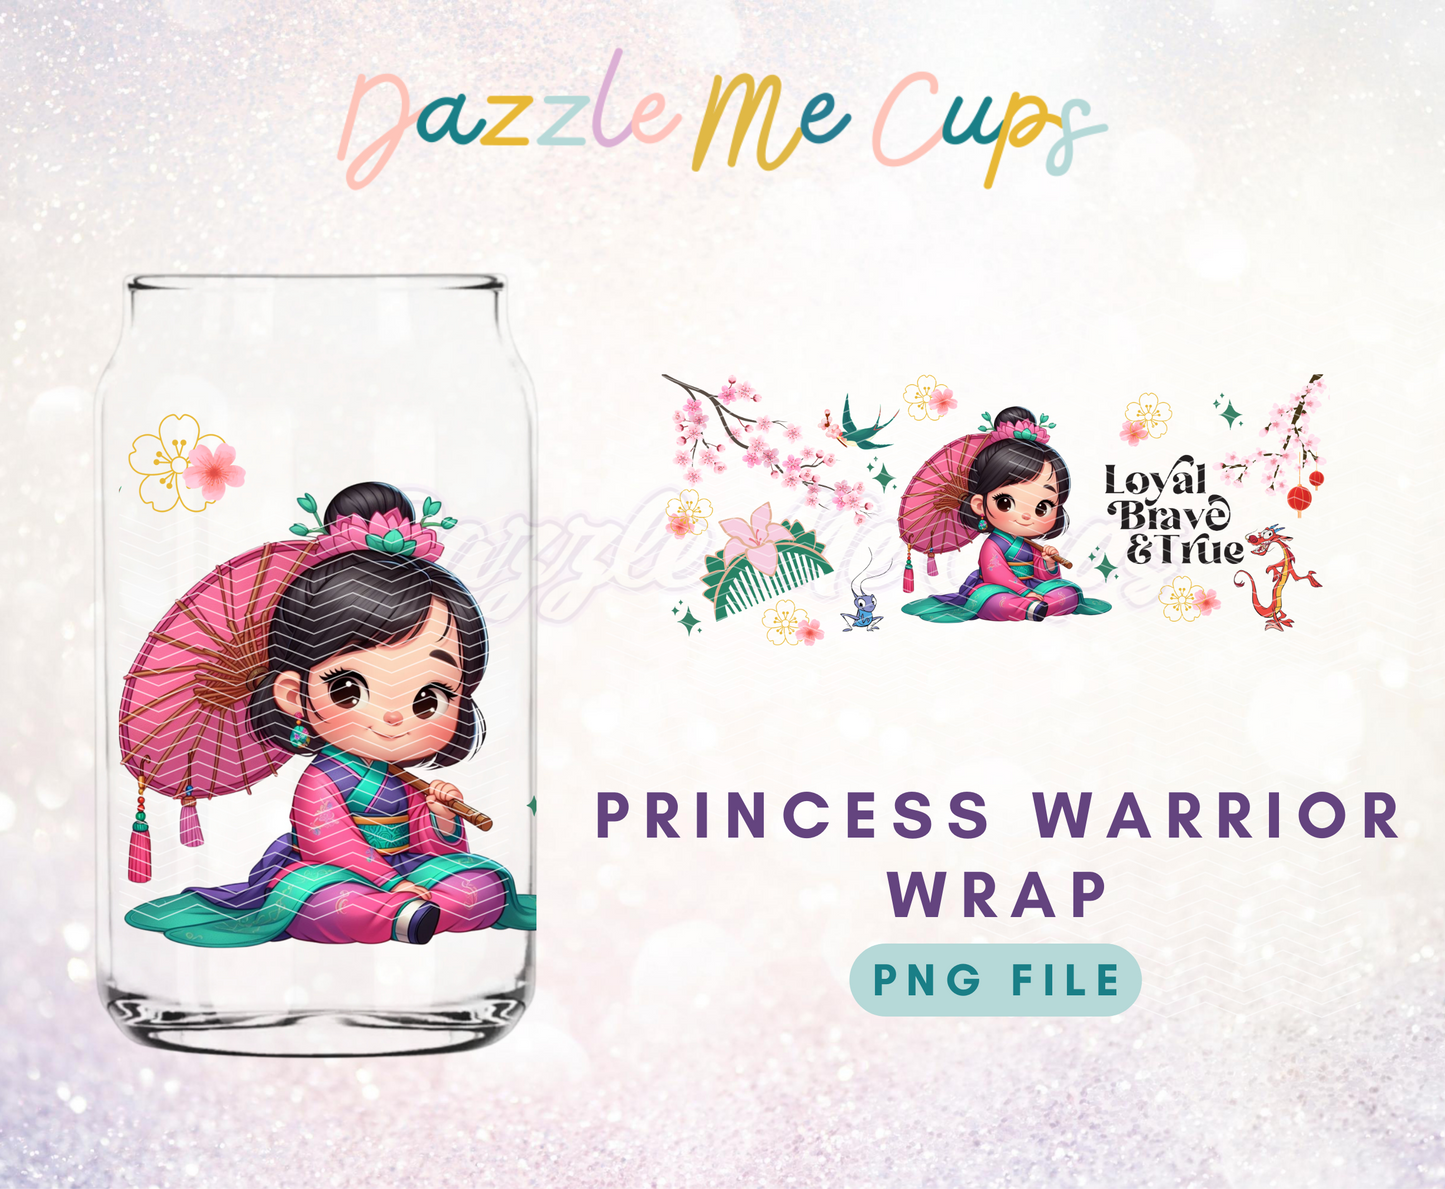 Princess warrior wrap PNG